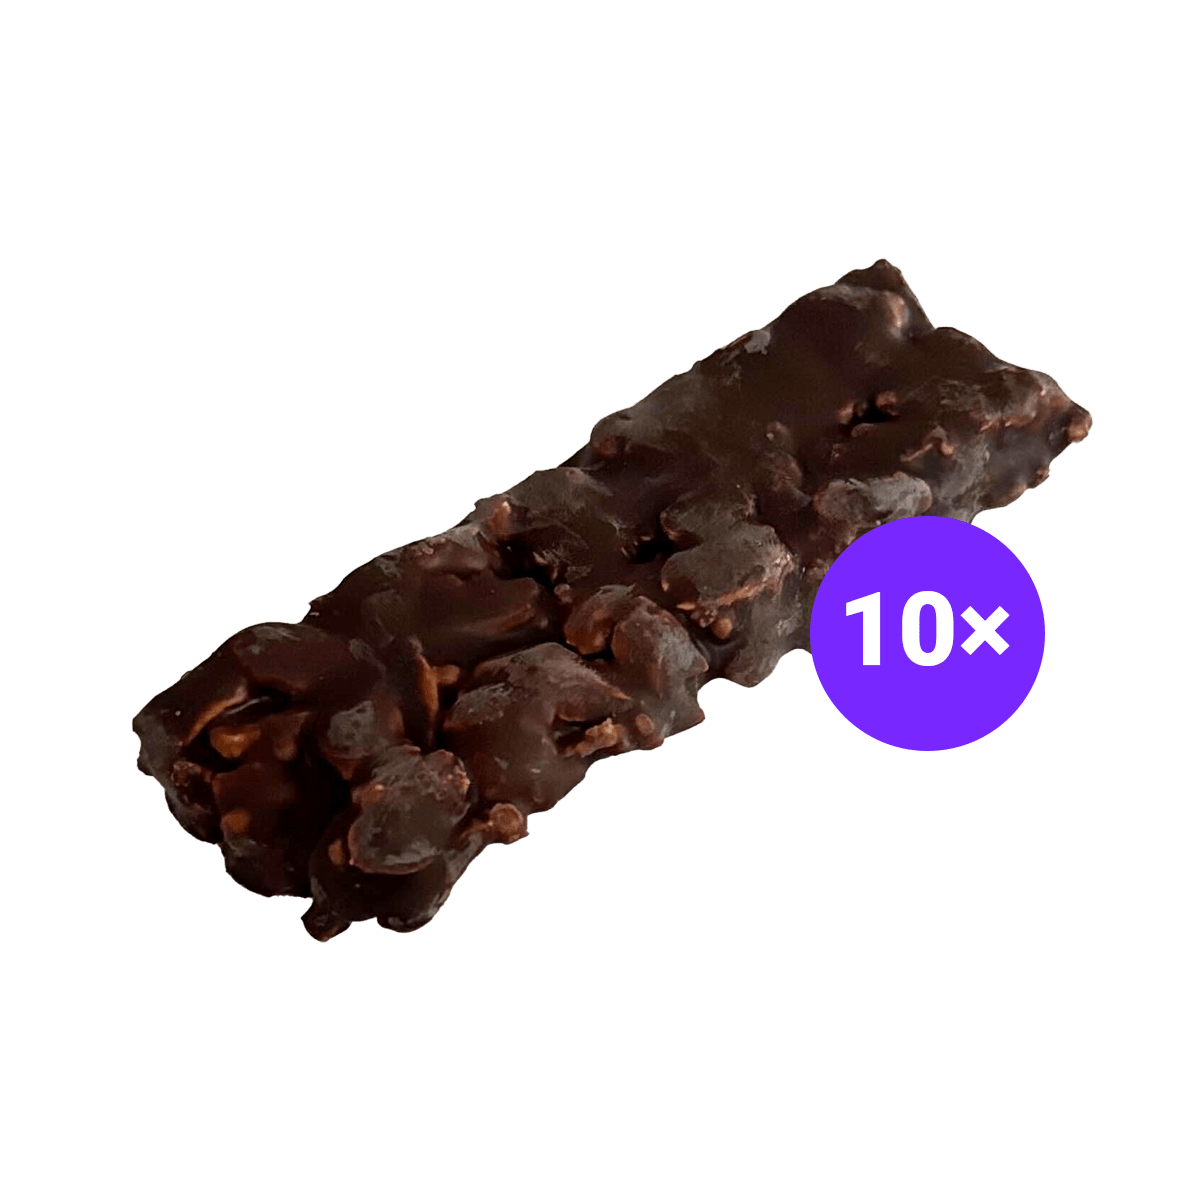 Just Legends Nussriegel Peanut Butter & Dark Chocolate | Funktionaler, veganer Xmas Product auf Pulverbasis ohne Zucker, mit wenig Kalorien, vielen Vitaminen und natürlichen Aromen.